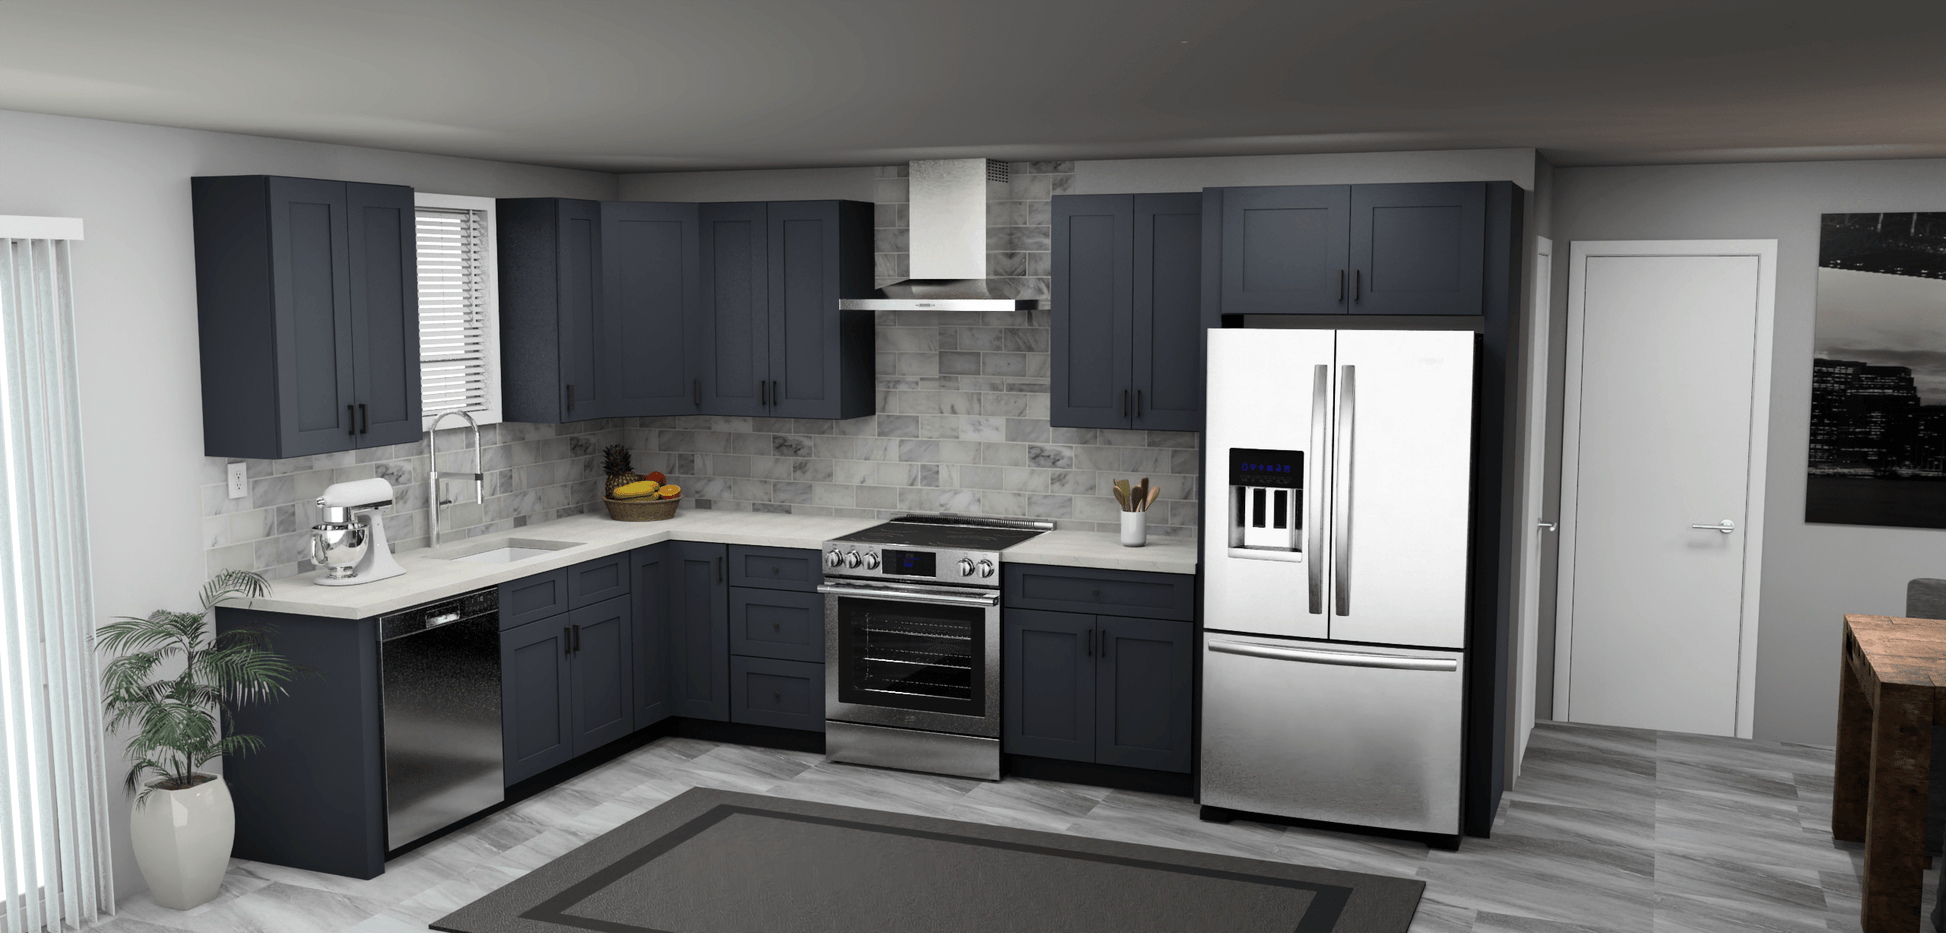 Fabuwood Allure Galaxy Indigo 8 x 13 L Shaped Kitchen Main Layout Photo